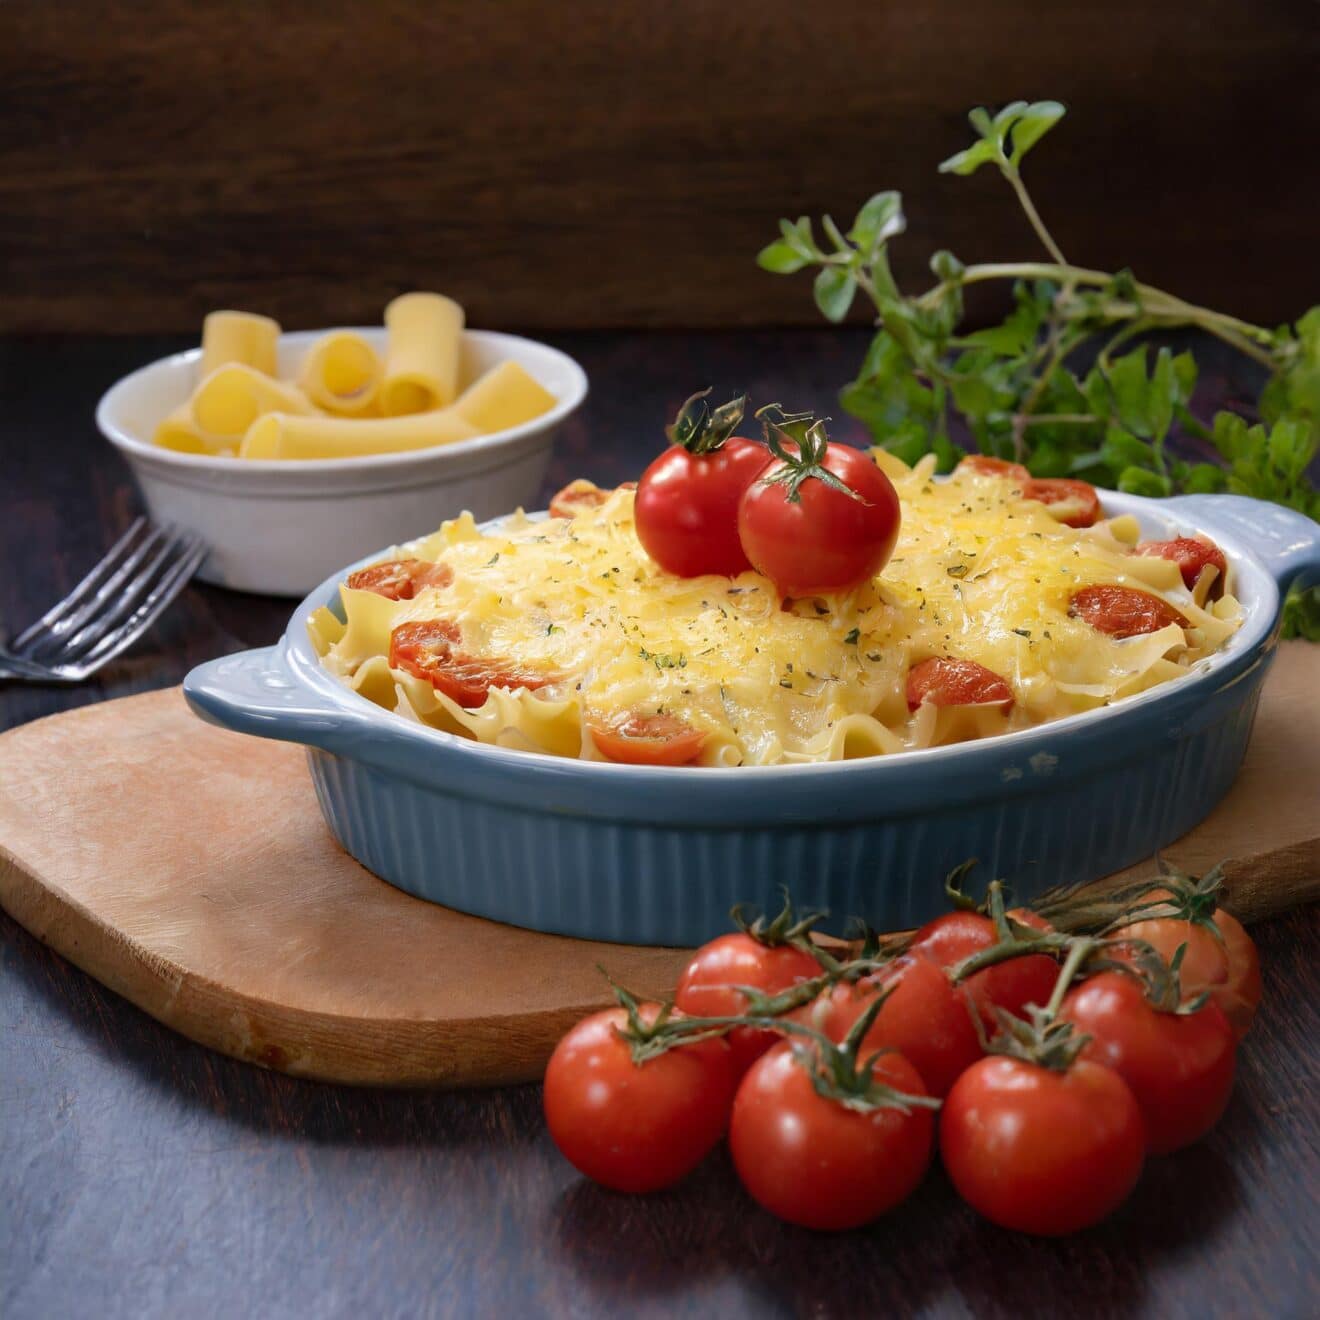 Découvrez le Gratin de pâtes au thon et tomates cerises : une recette savoureuse et conviviale